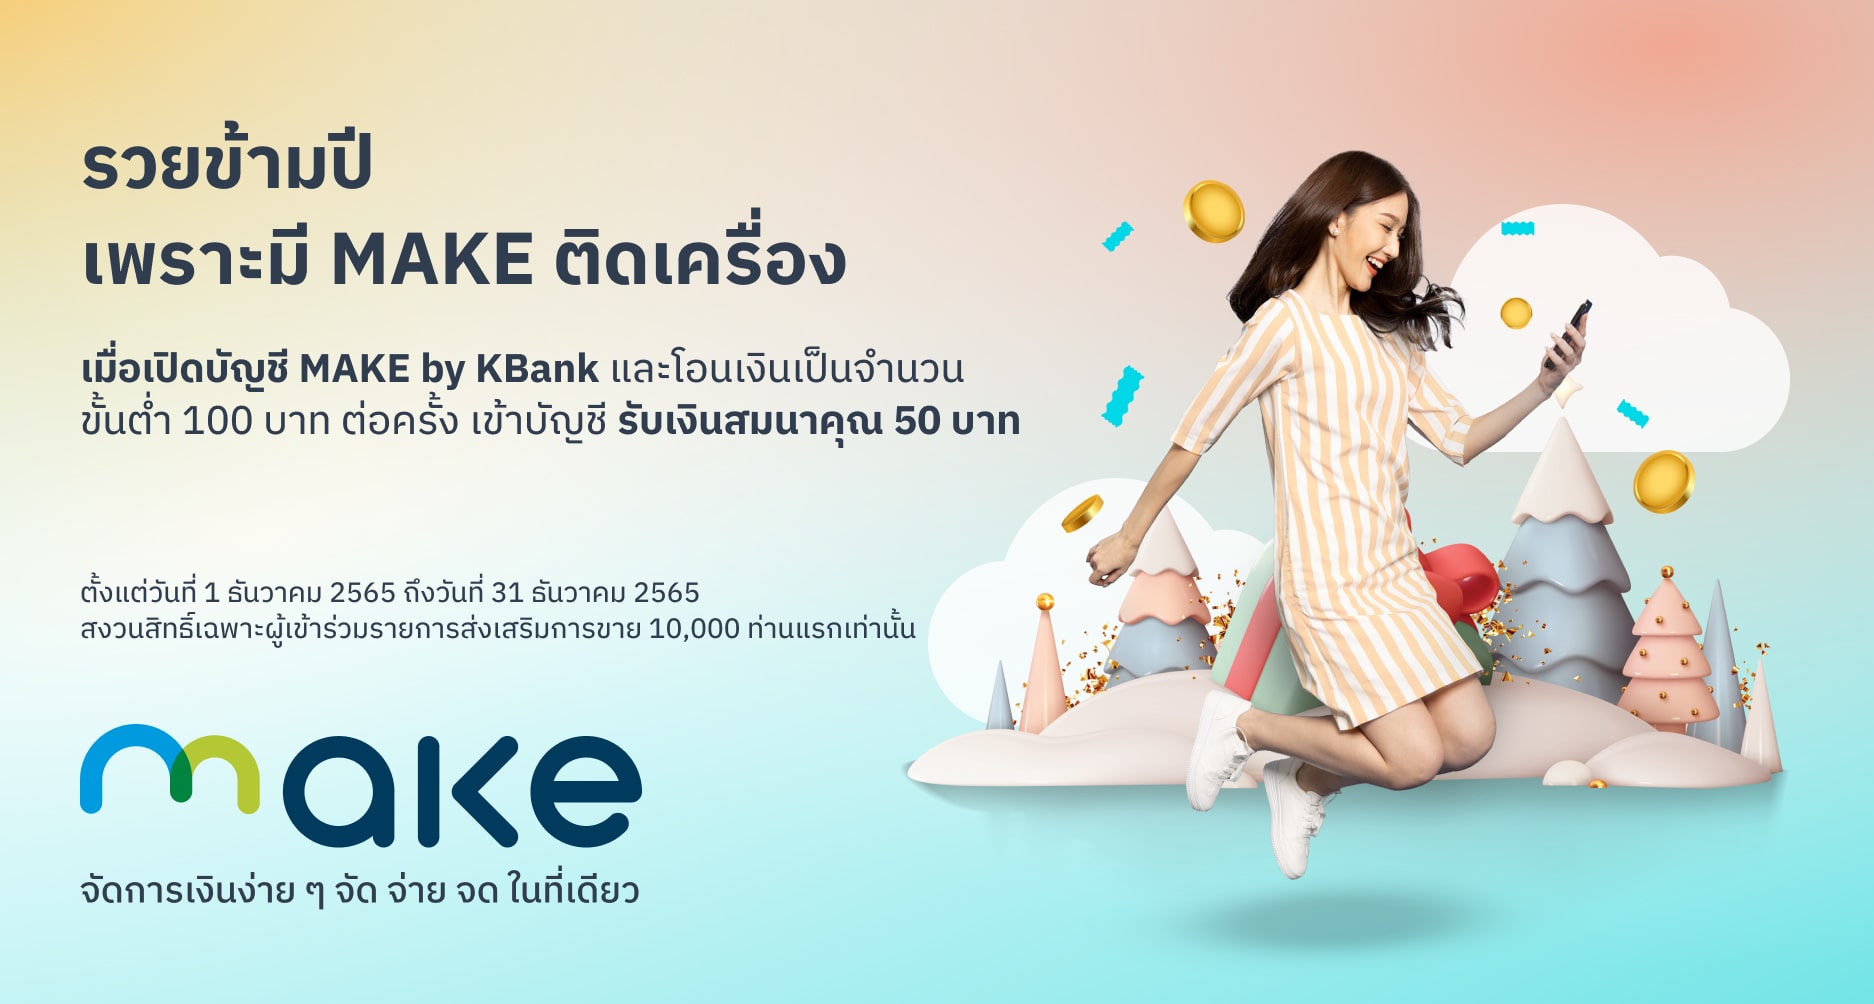 สมัคร Make และเติมเงิน 100 บาท รับเงินคืน 50 บาท | Make By Kbank